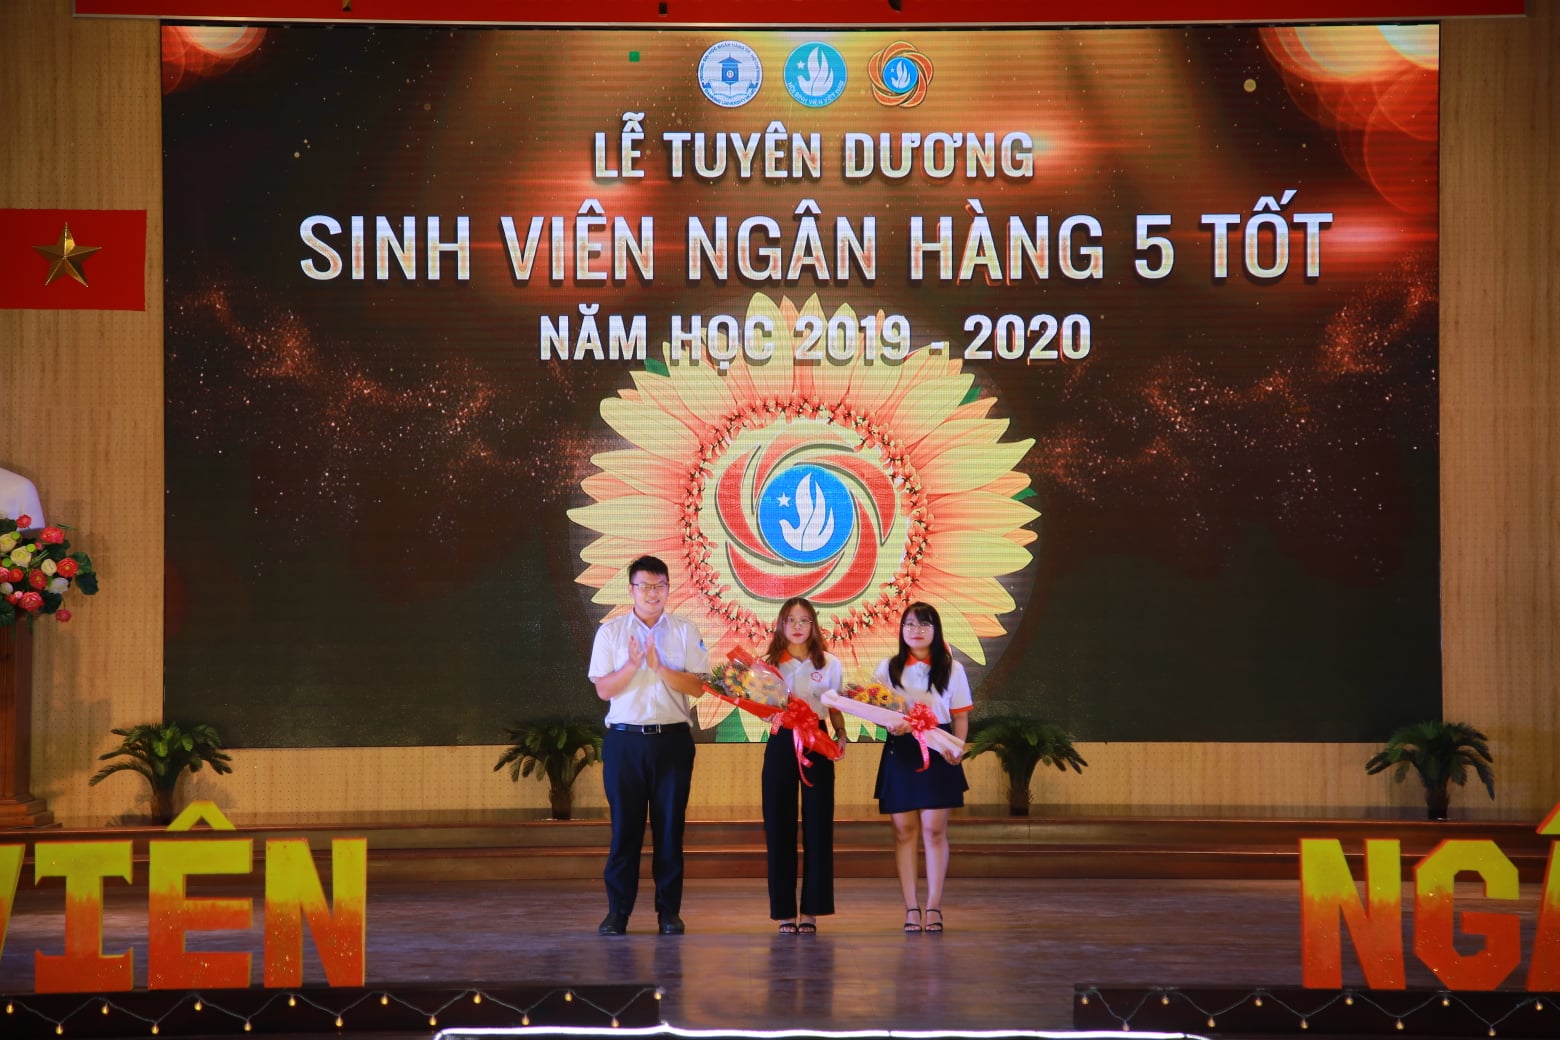 Sinh viên Trang Diệu Ái, Chi hội: HQ5 - GE12 và Phạm Thị Ngọc Lành, Chi hội: DH33AV01 - Sinh viên 5 tốt cấp Thành nhận hoa từ Ban tổ chức.